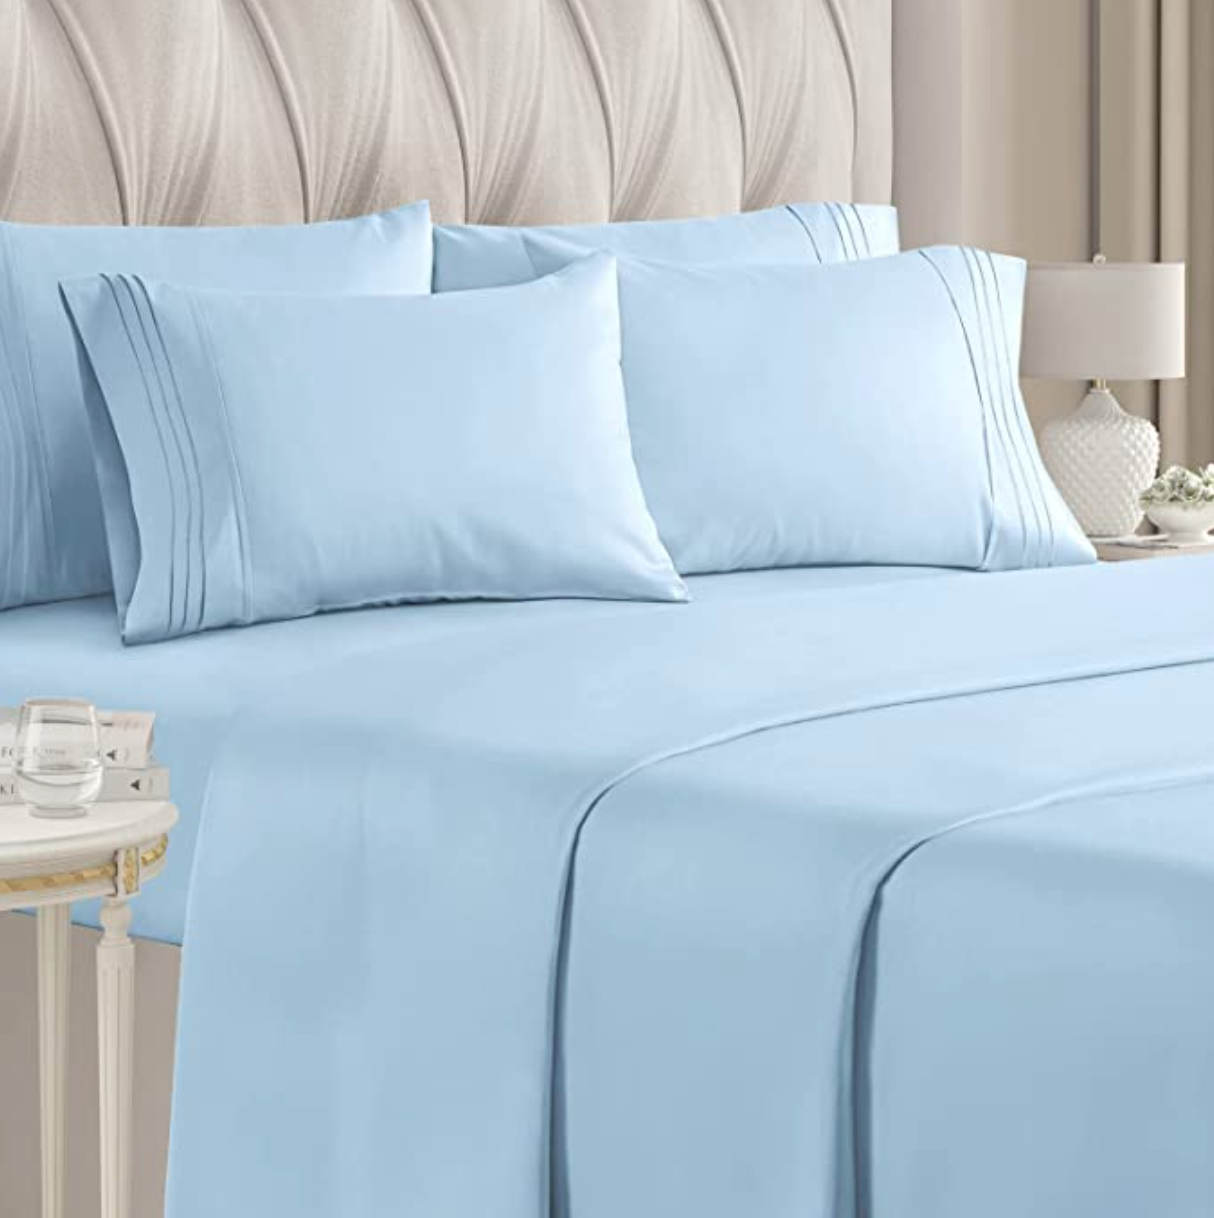 CGK 6-Piece Luxury Bed Sheet Set 